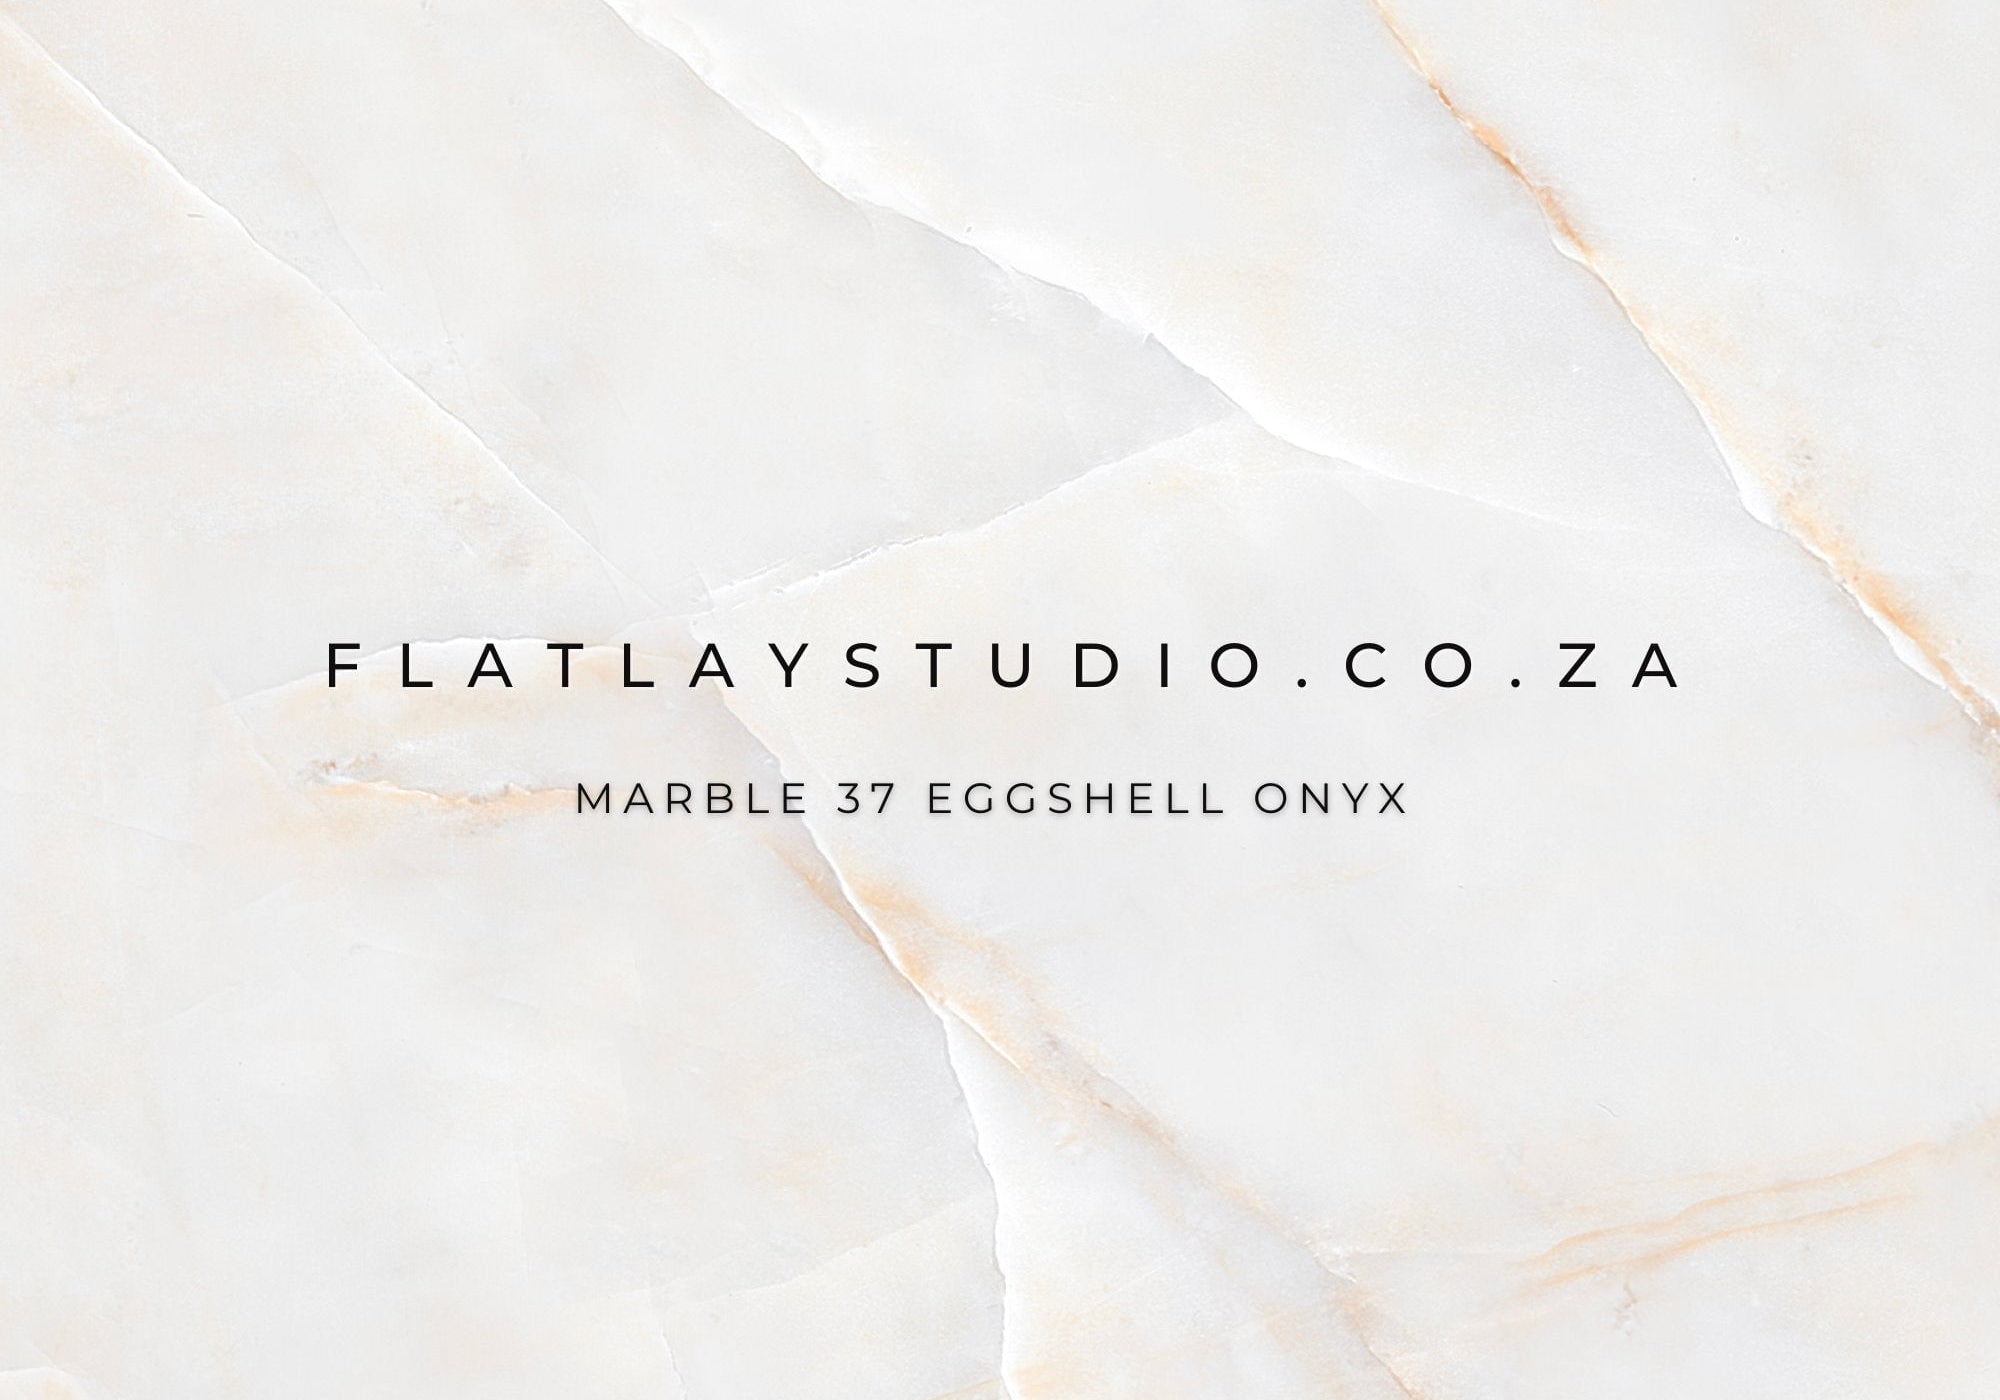 Marble 37 Eggshell Onyx (Flawed) - FlatlayStudio